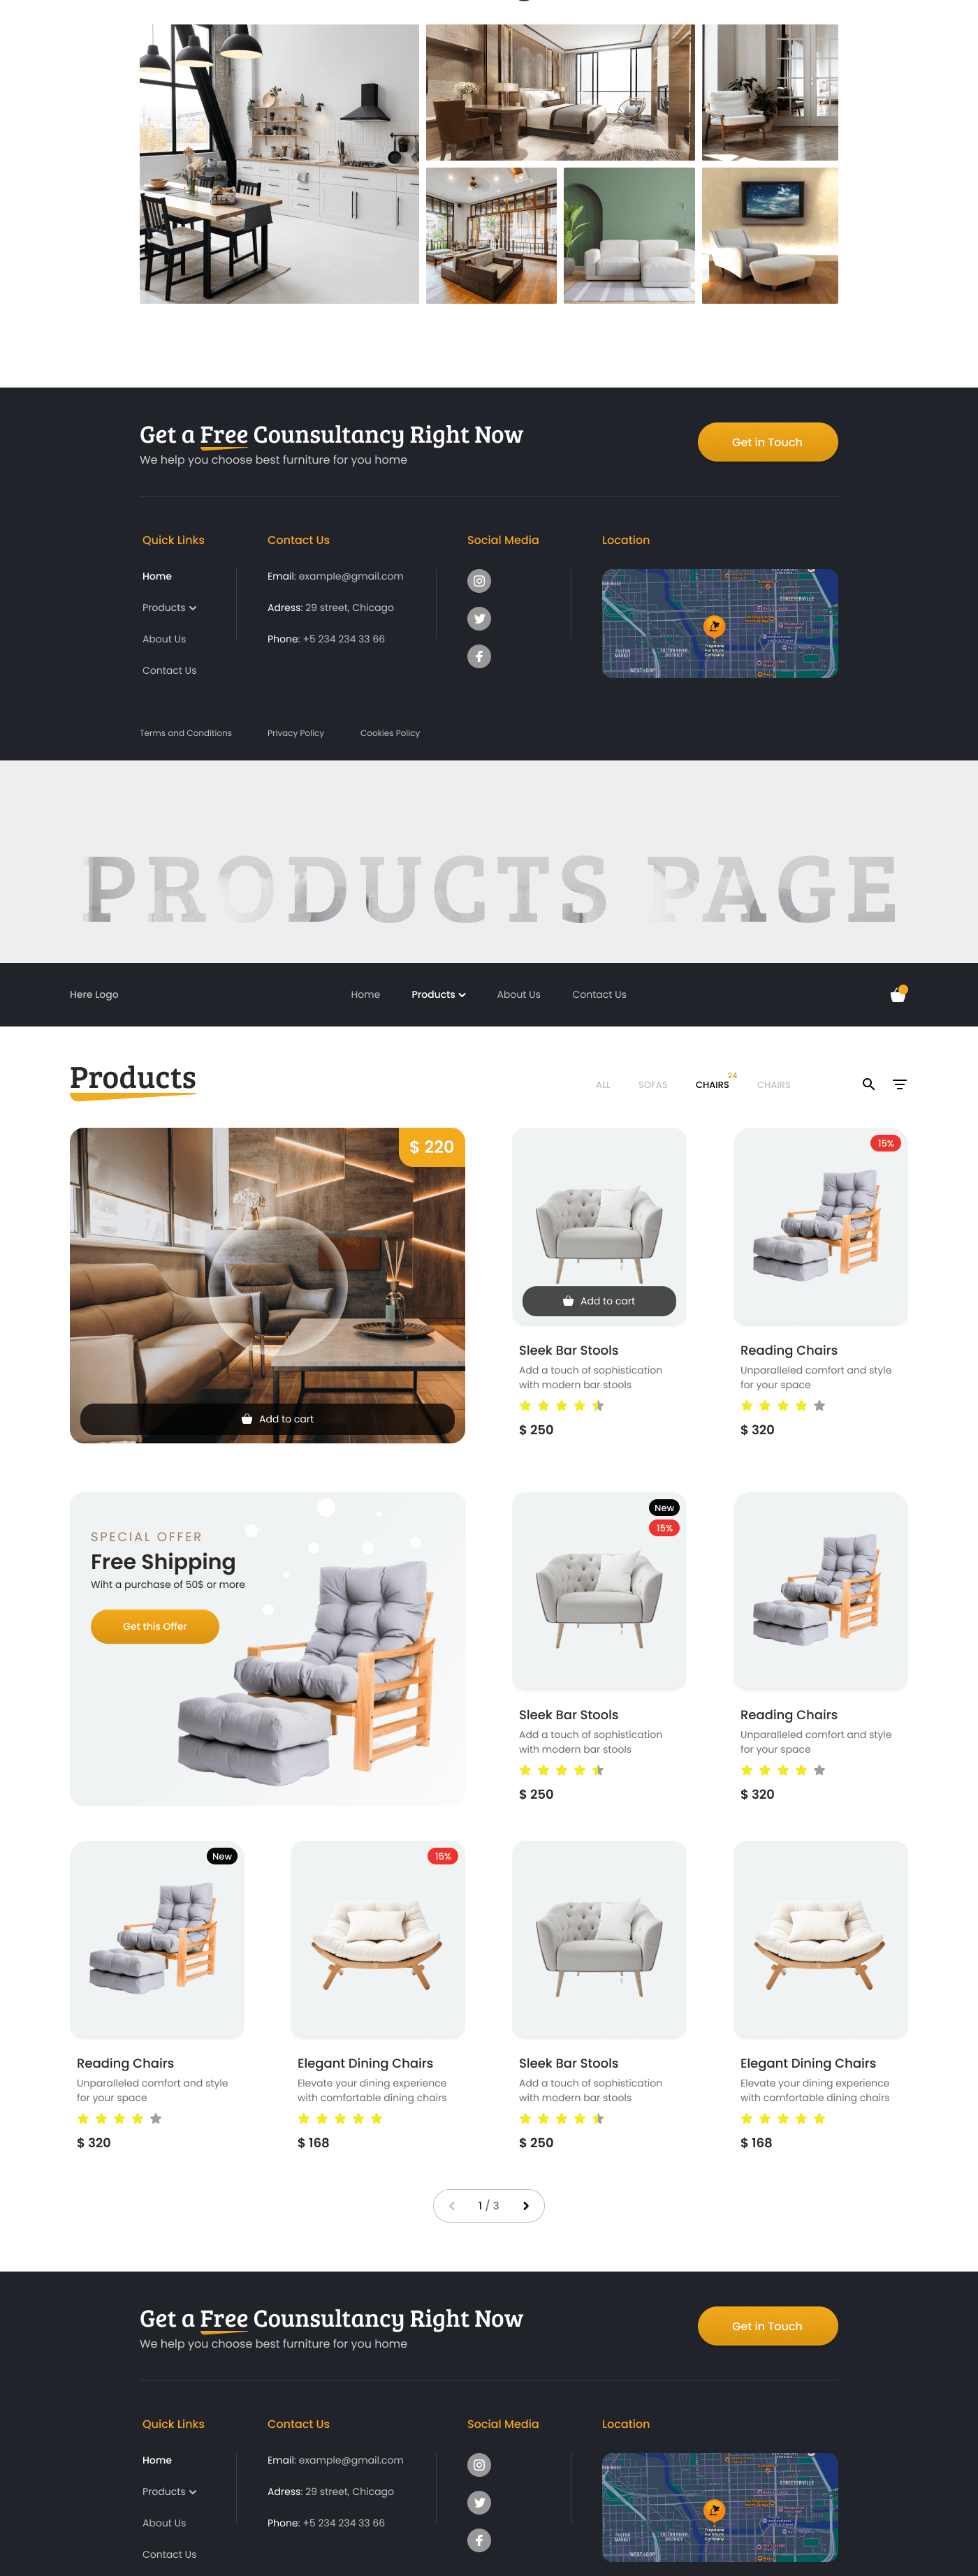 landing page Web Design  UI/UX Website design branding  furniture product design  Ecommerce Shopify